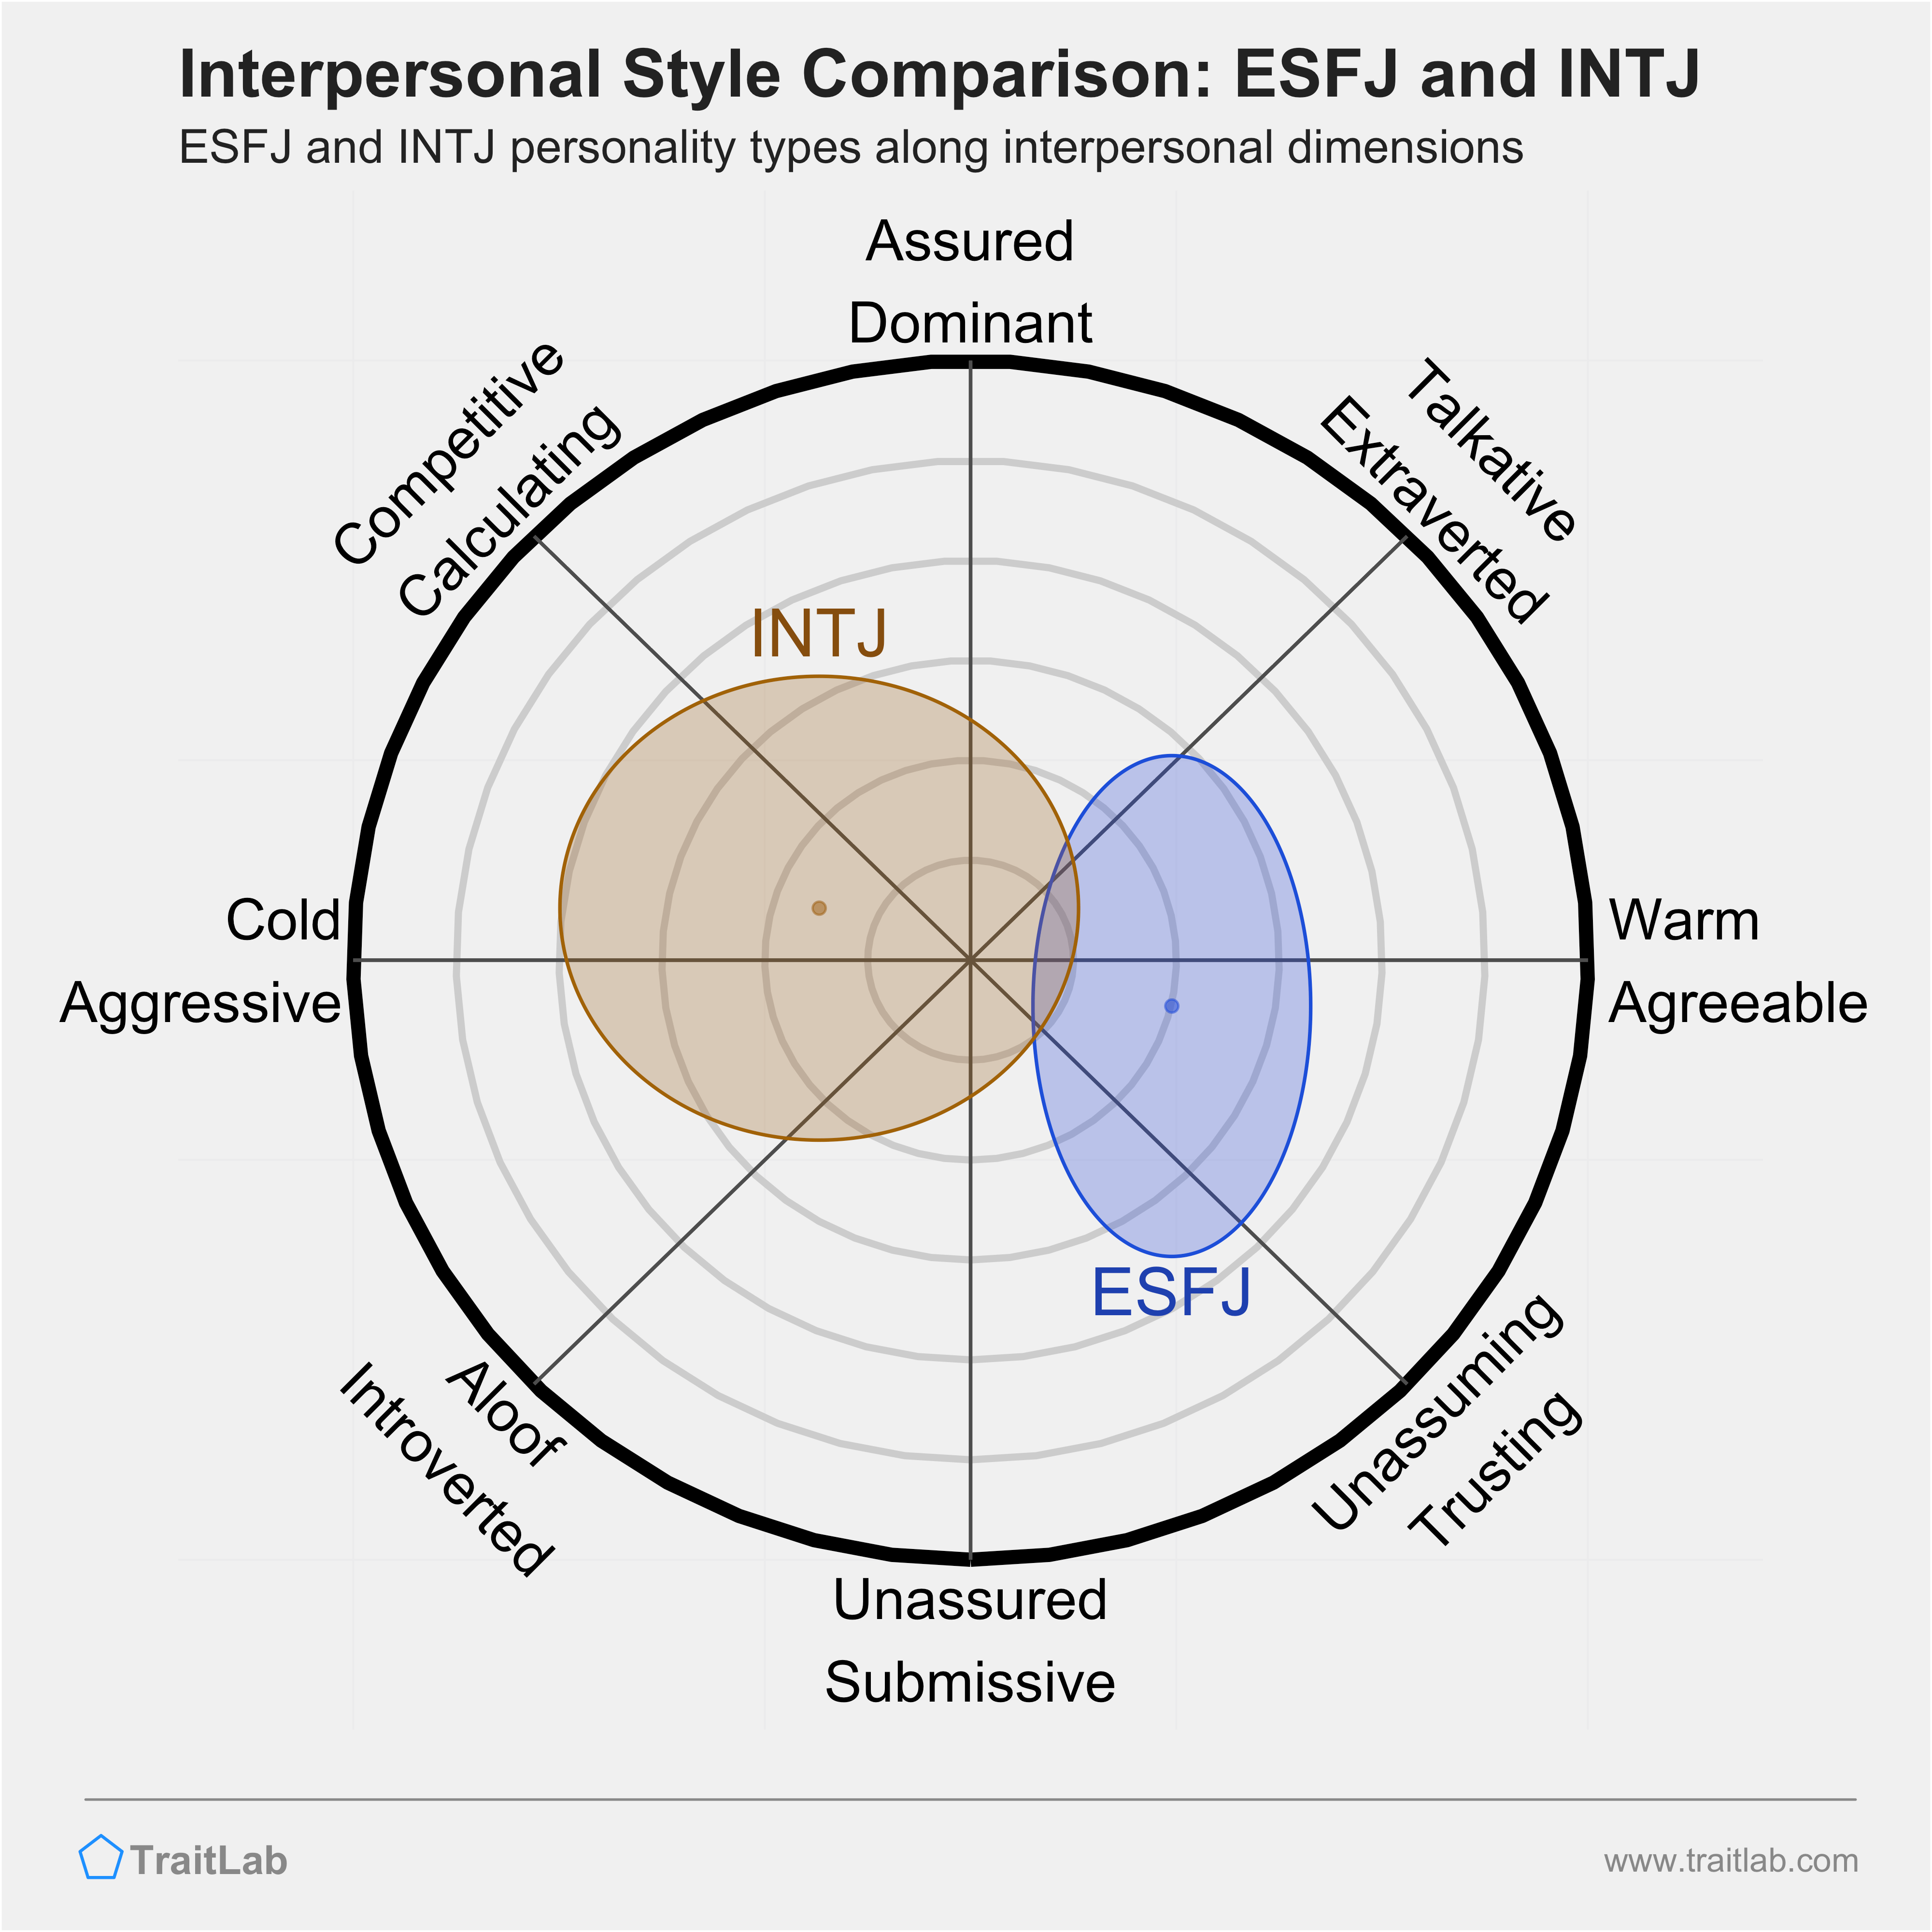 ESFJ and INTJ comparison across interpersonal dimensions